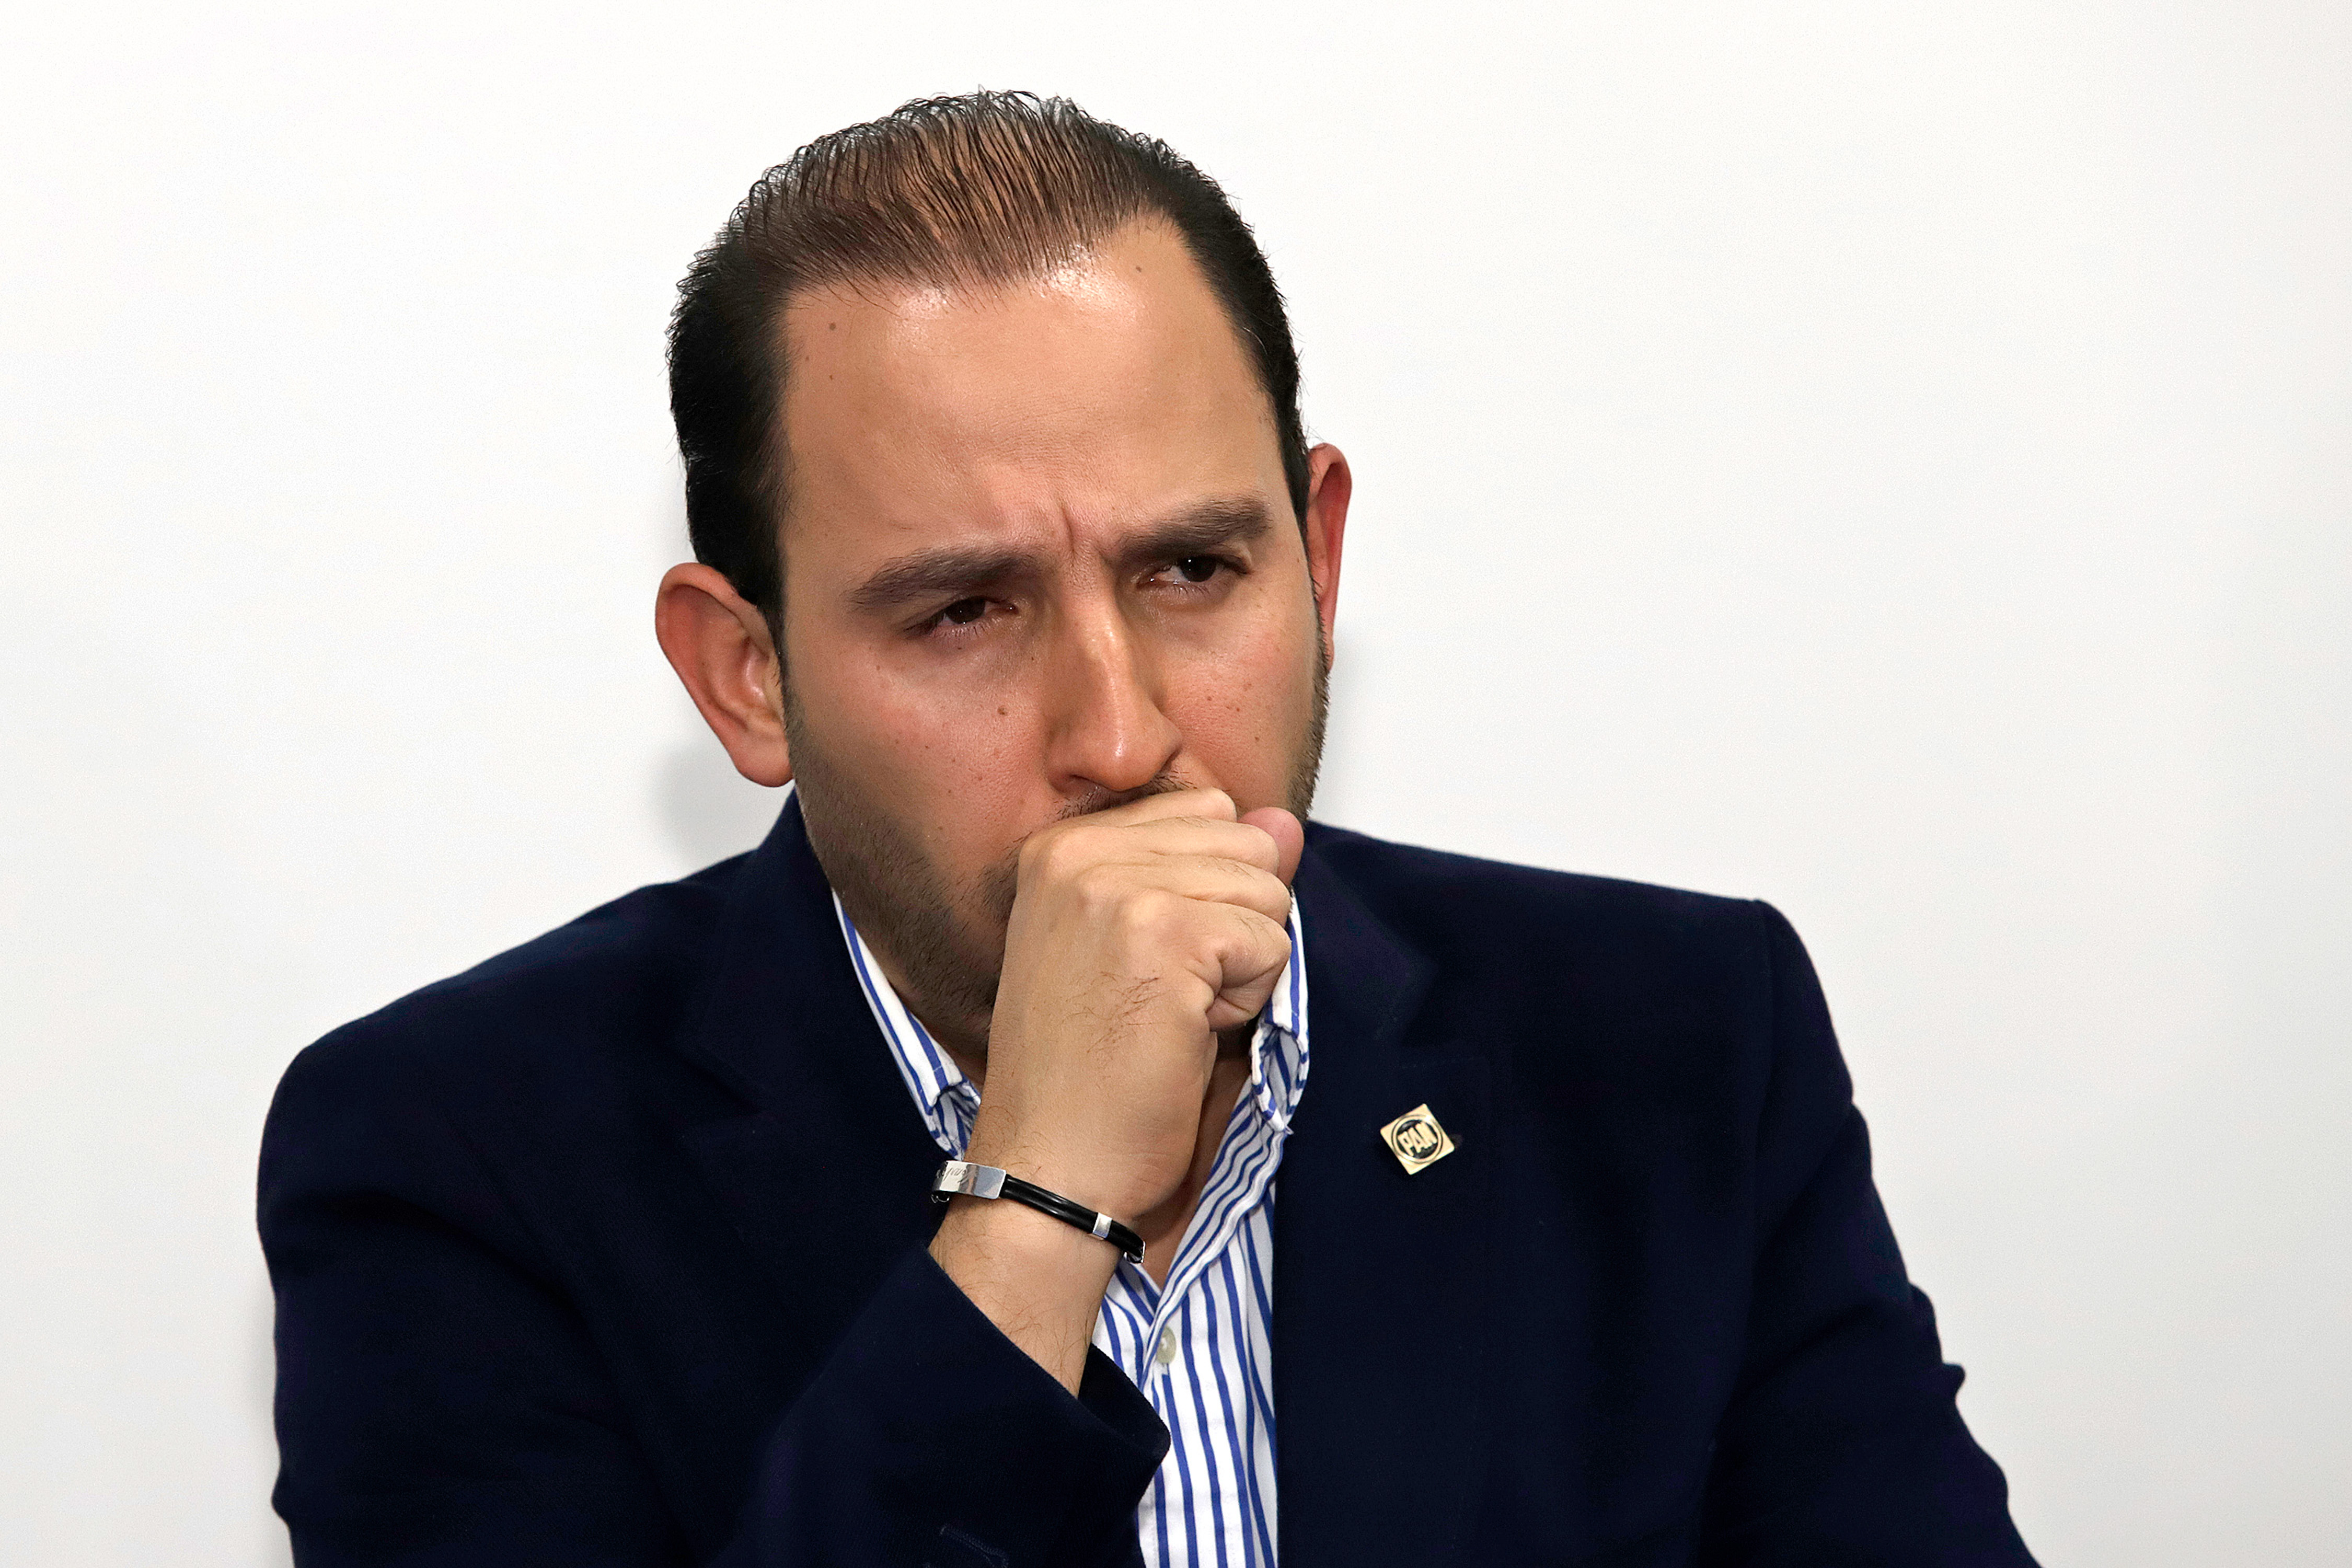 Marko Cortés, presidente del PAN, mencionó que con la Guardia Nacional el gobierno no puede fallar en temas de seguridad